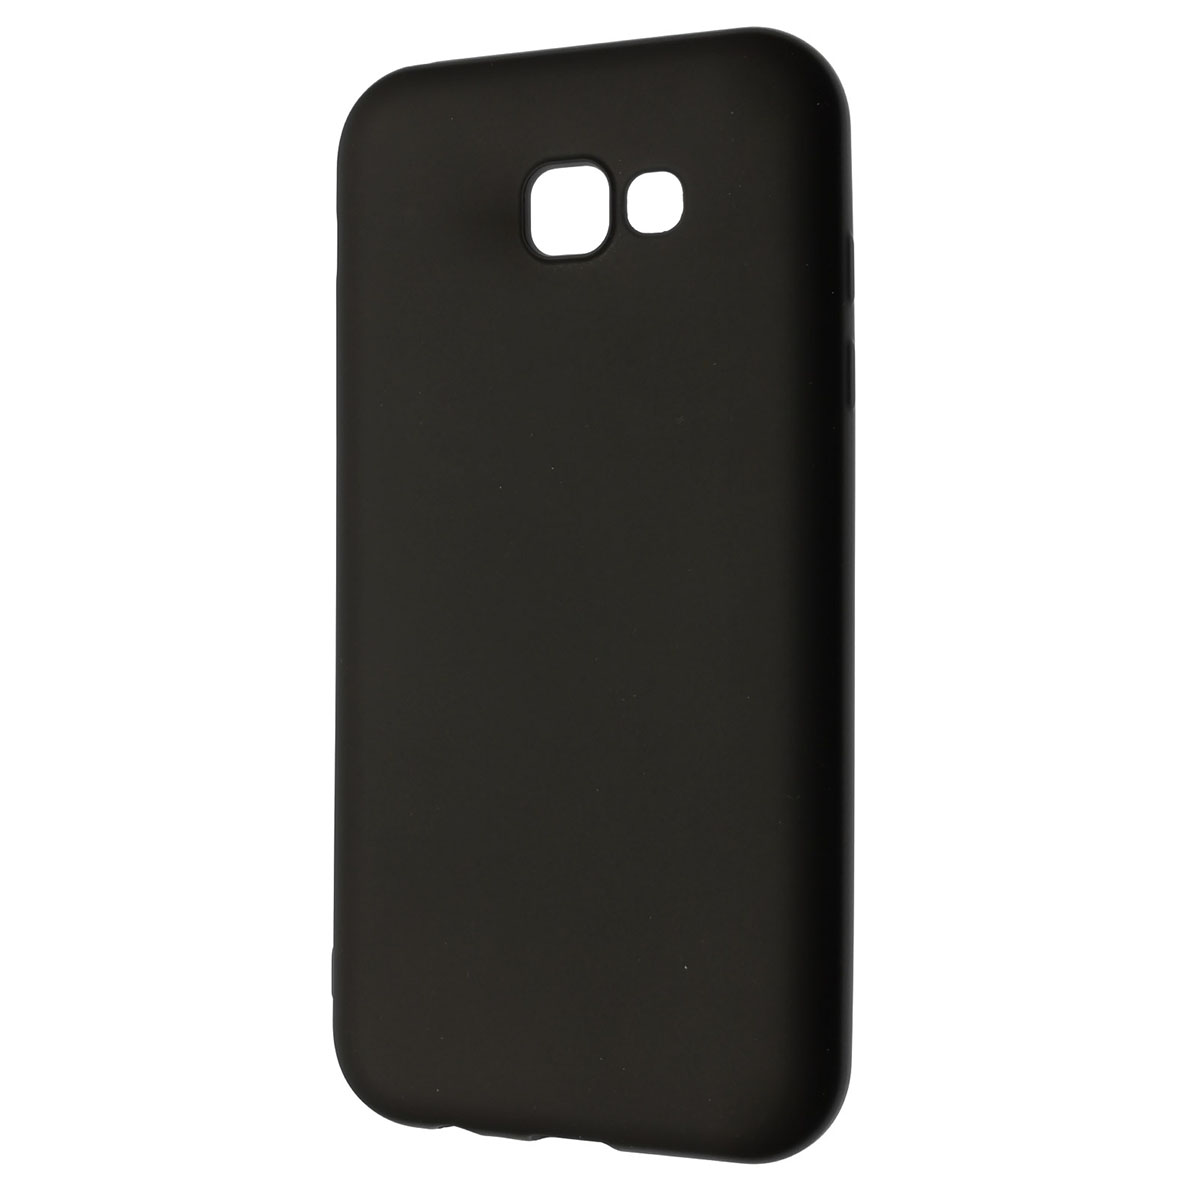 Чехол накладка J-Case THIN для SAMSUNG Galaxy A7 2017, силикон, цвет черный.